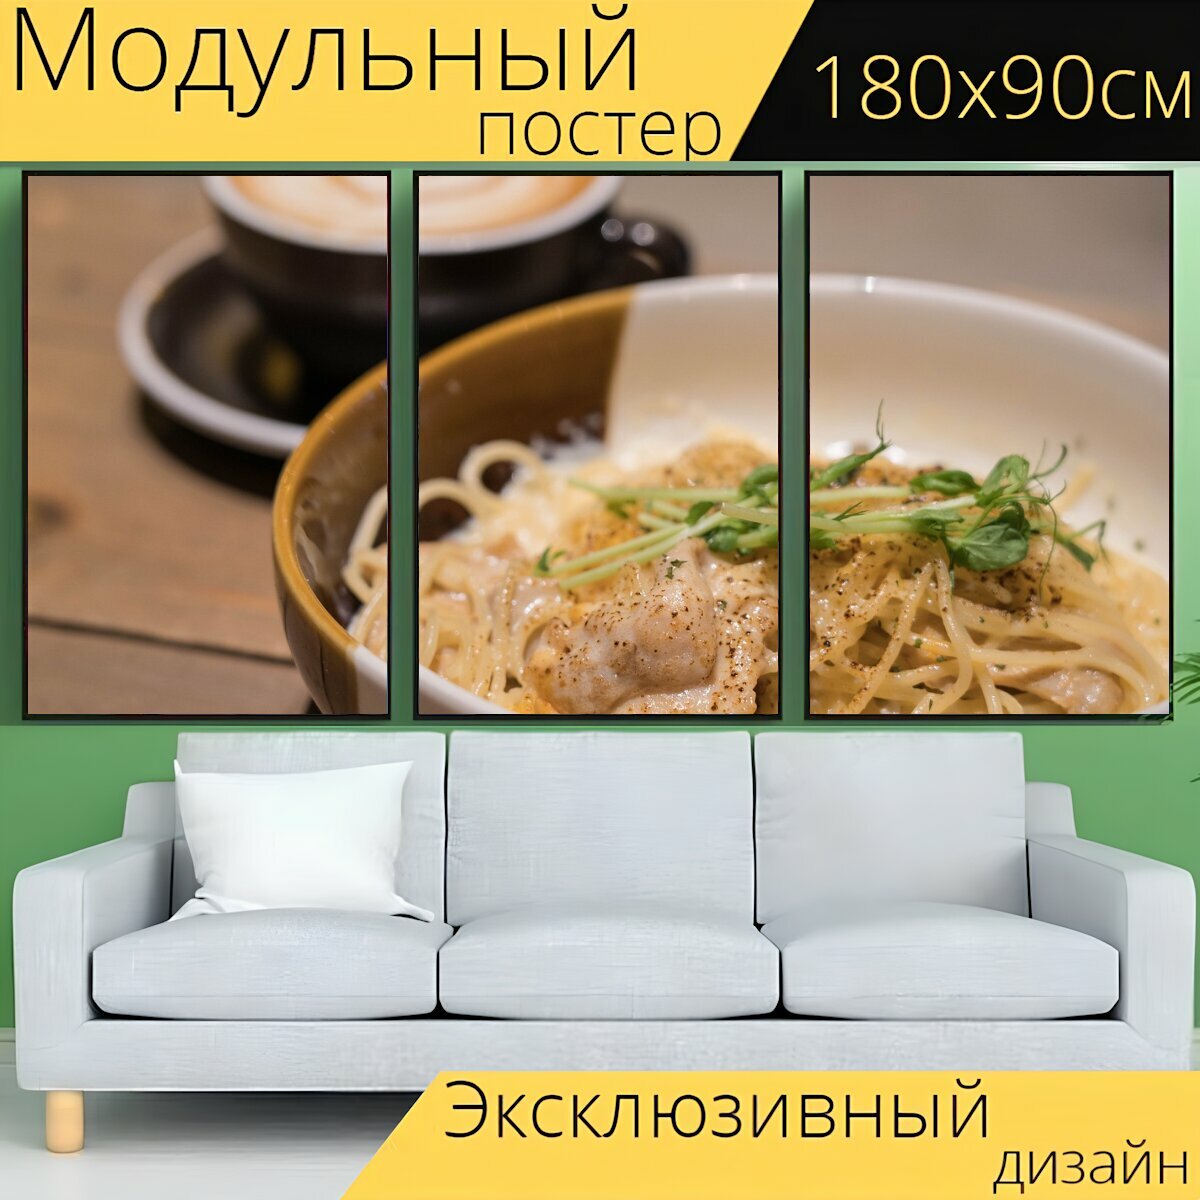 Модульный постер "Еда, макаронные изделия, рацион питания" 180 x 90 см. для интерьера